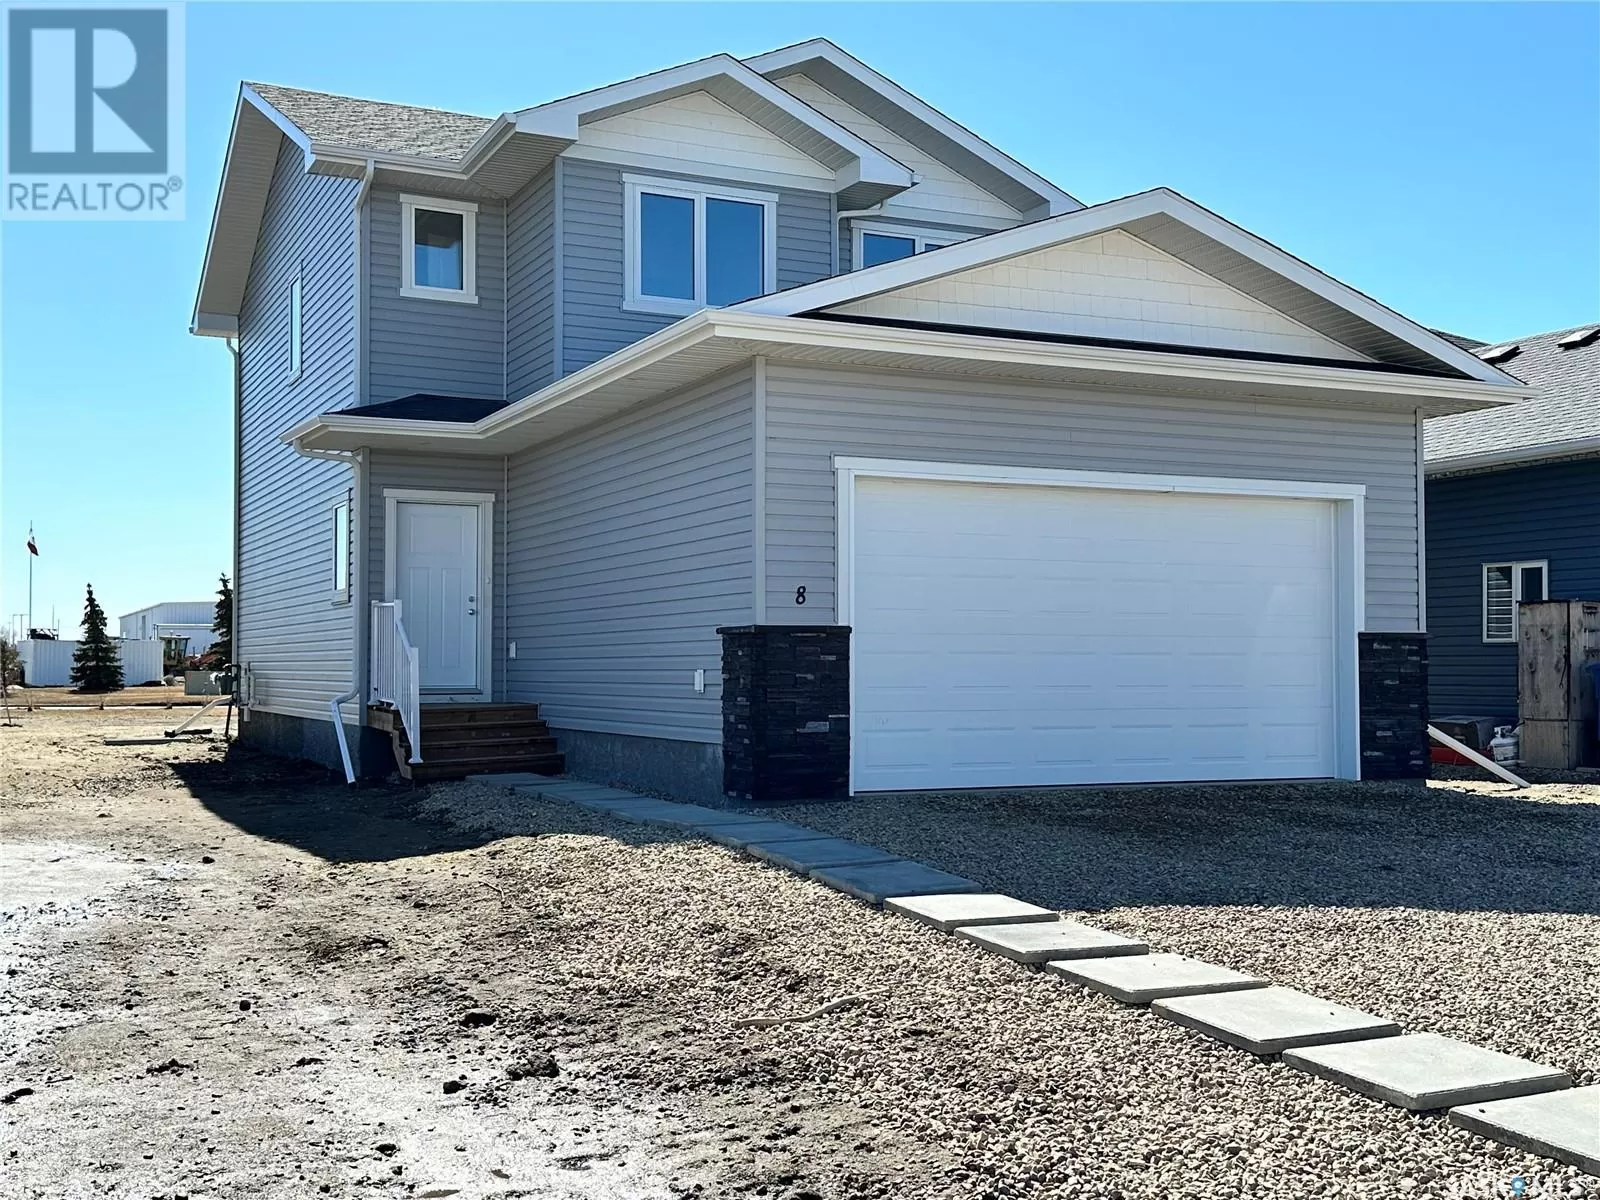 House for rent: 8 Aspen Place, Humboldt, Saskatchewan S0K 2A0